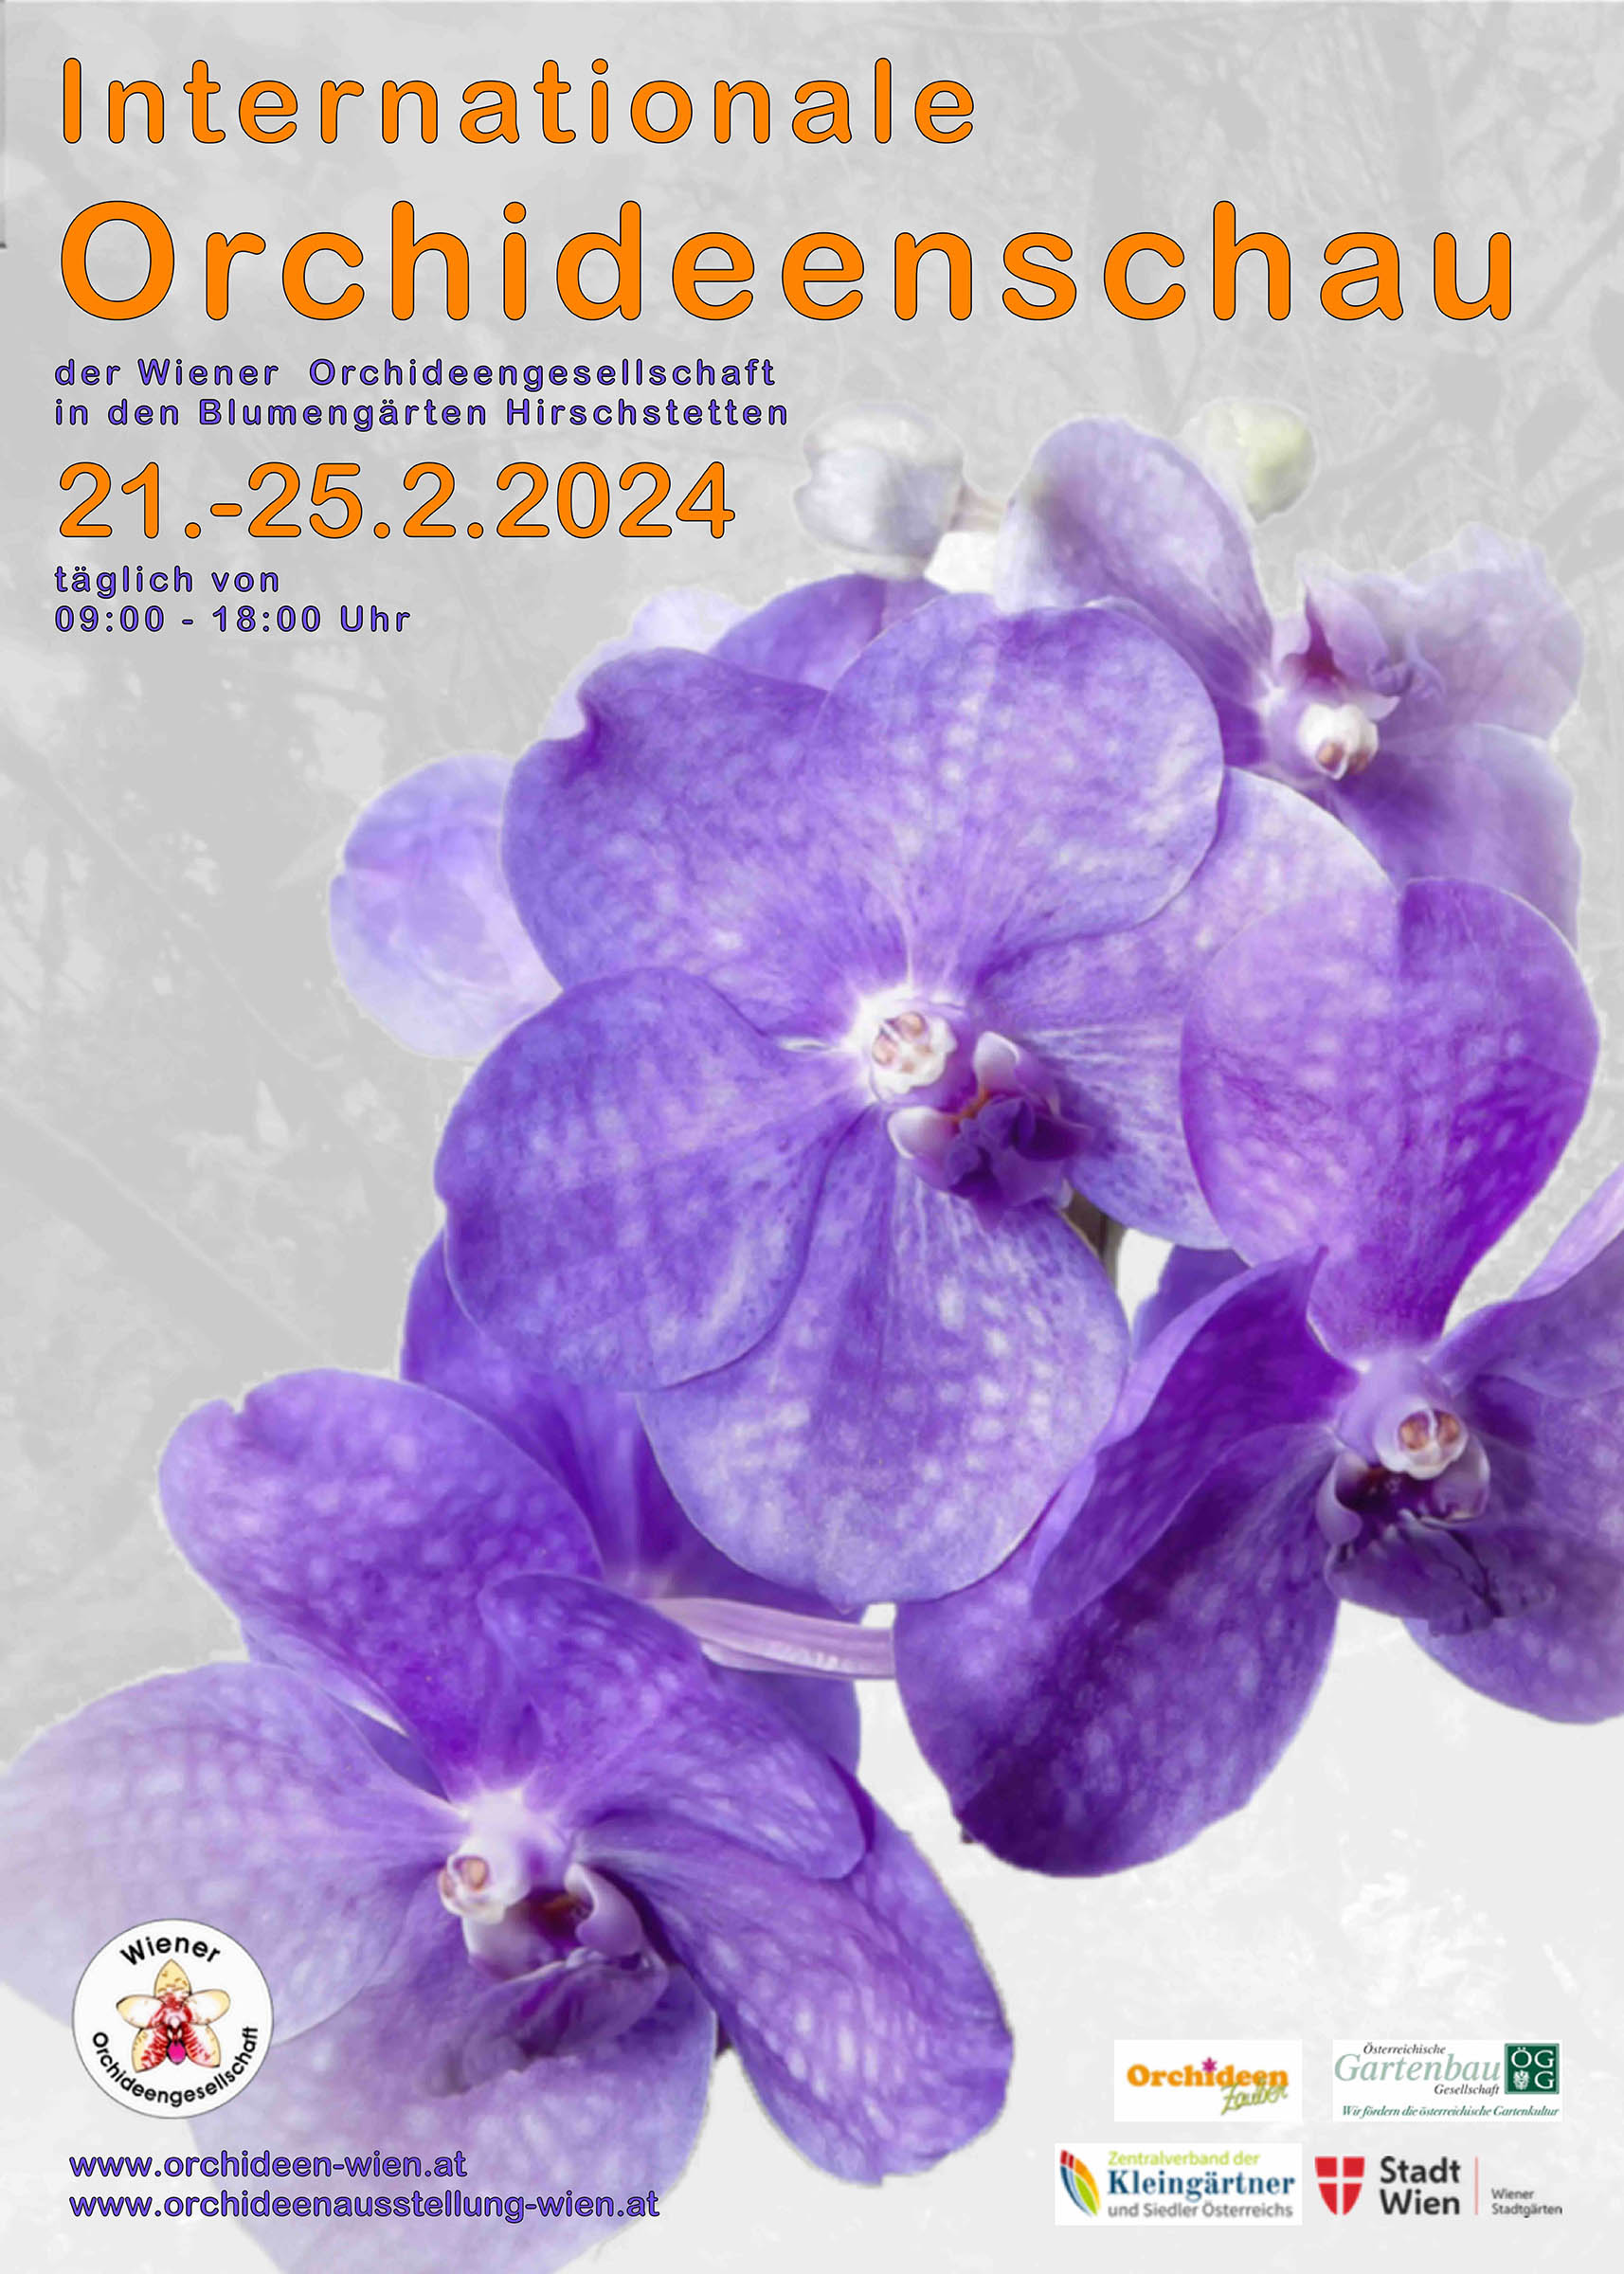 Internationale Orchideenschau 2024 in Wien